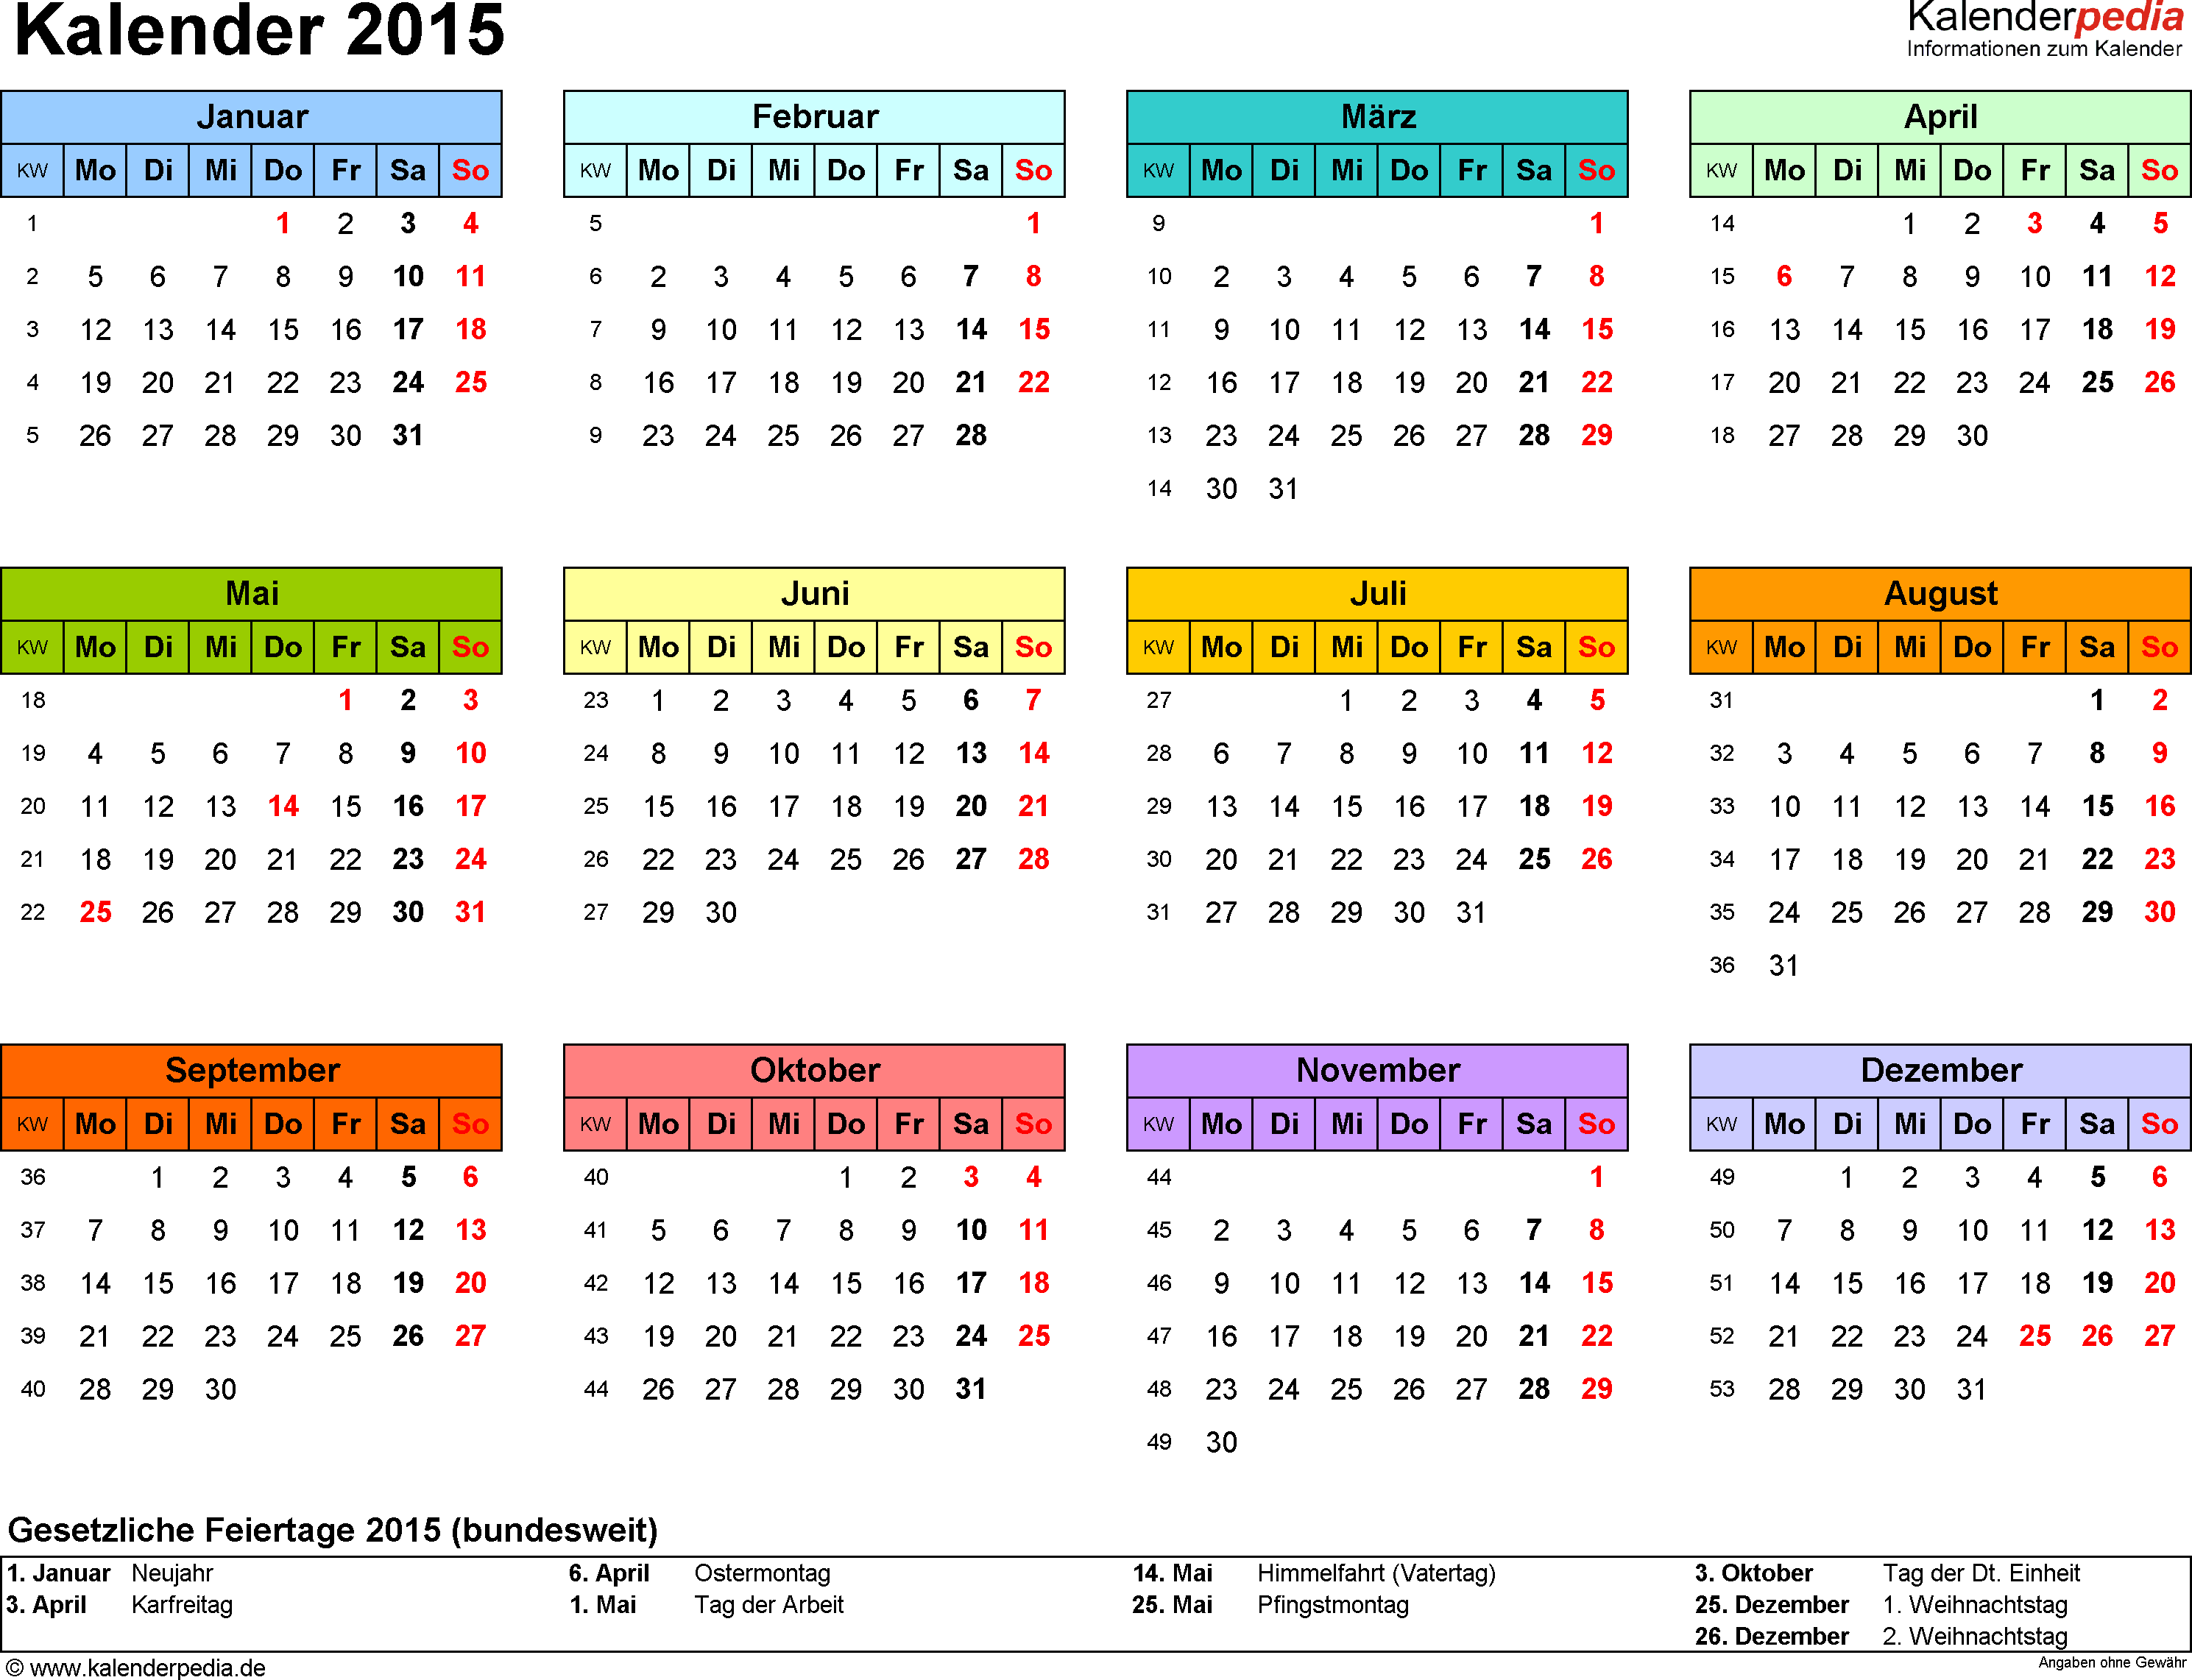 Kalenderpedia Informationen Zum Kalender Kalender 2015 Kalender Jahres Kalender